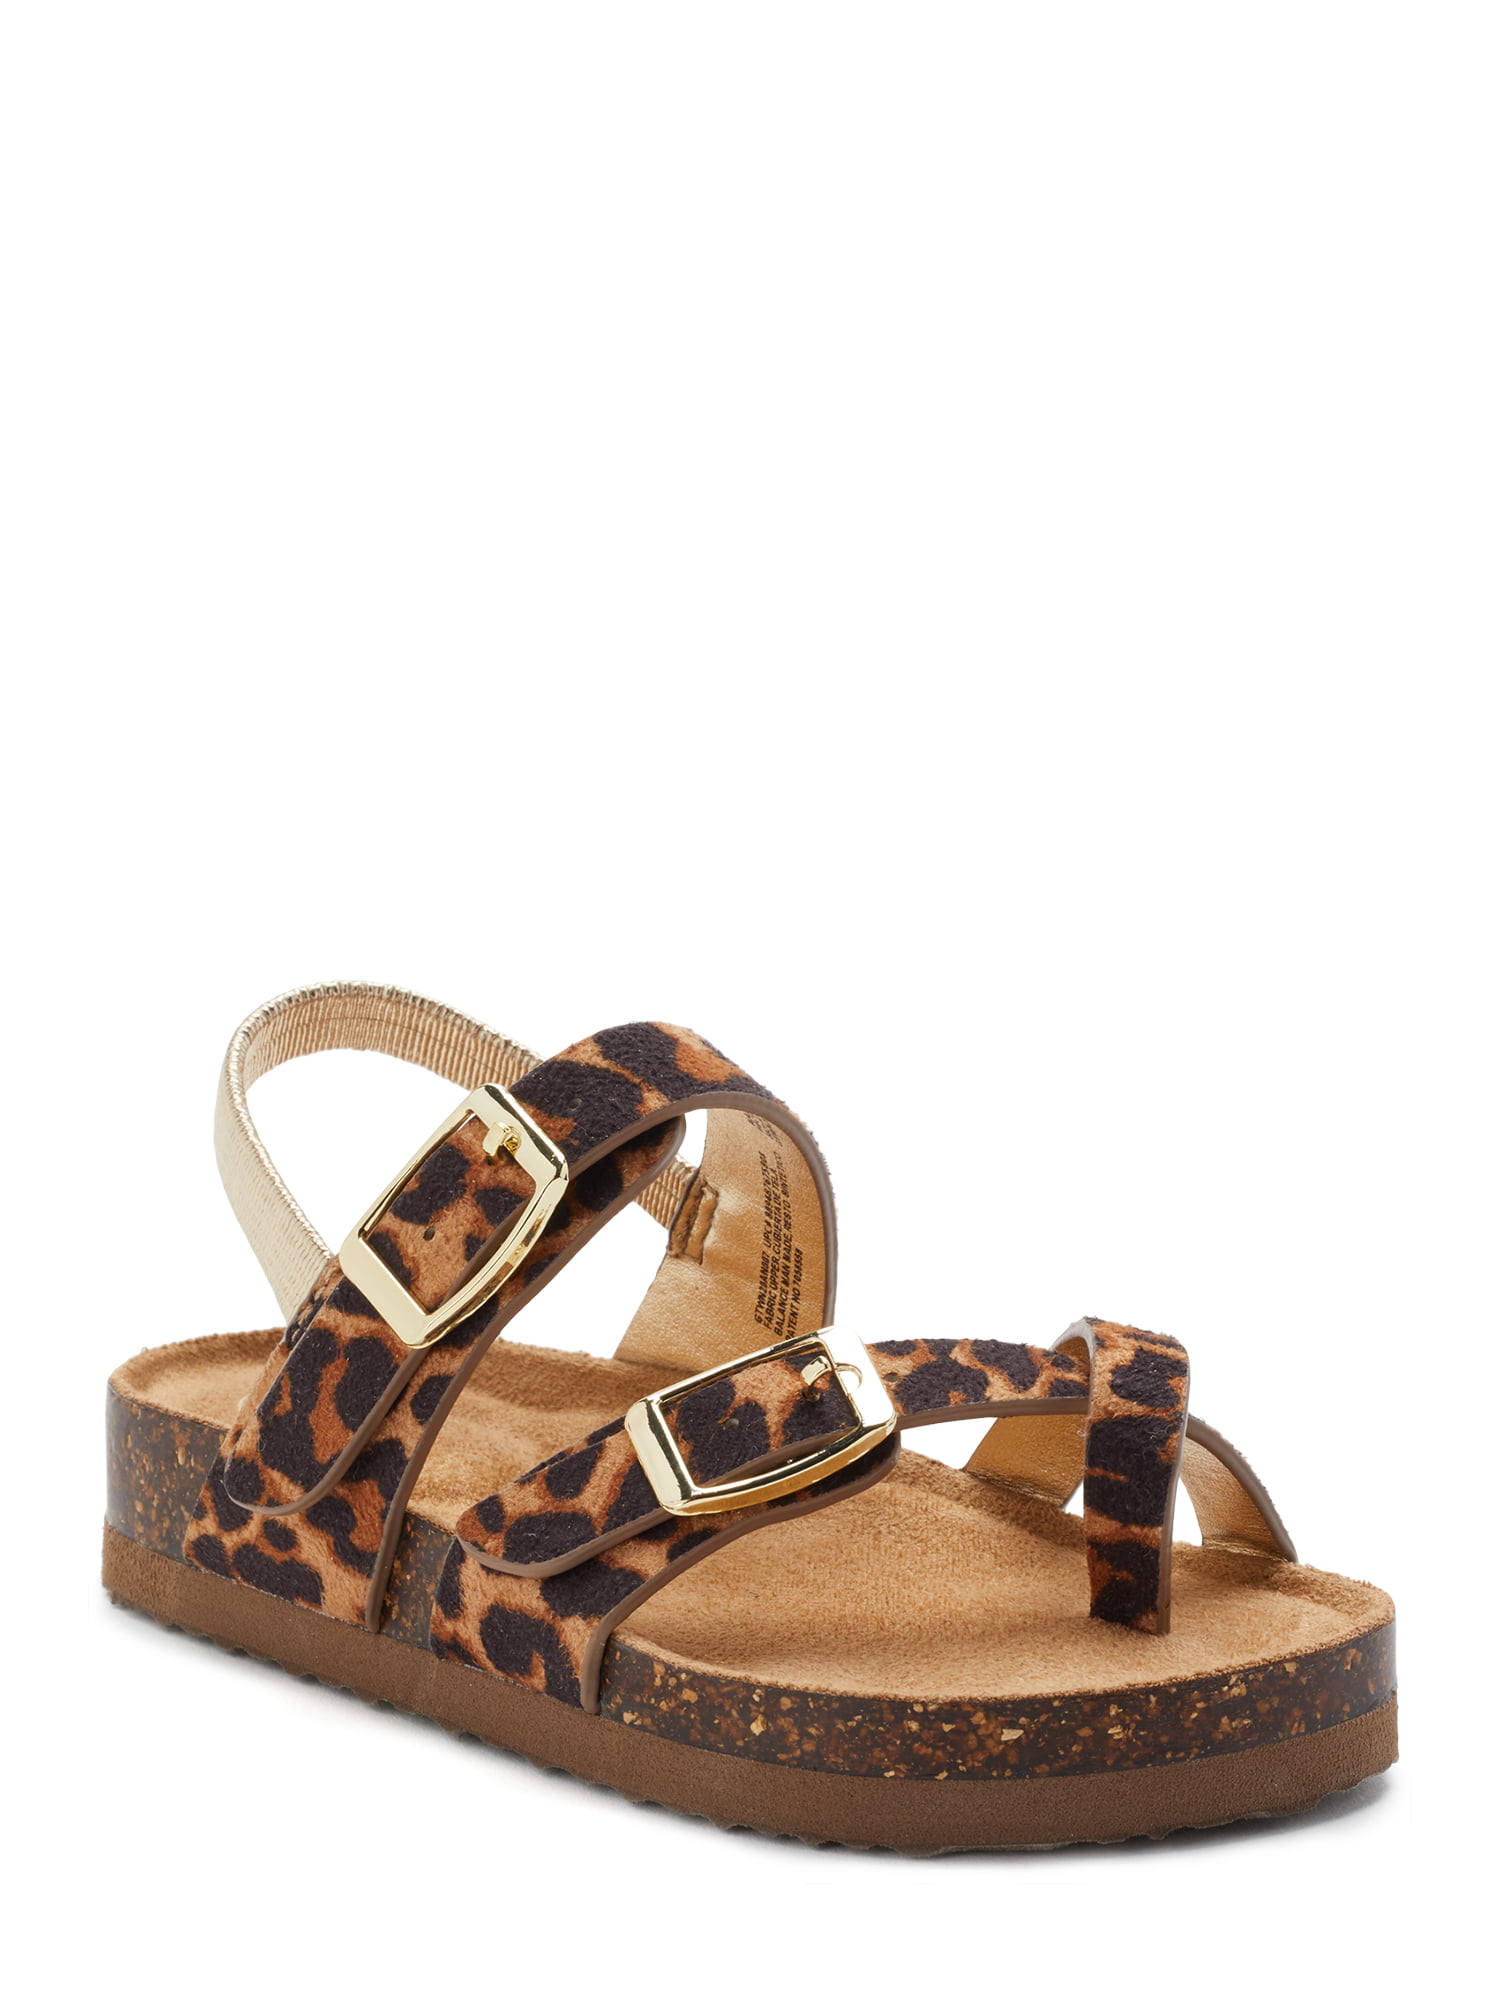 leopard sandal slides